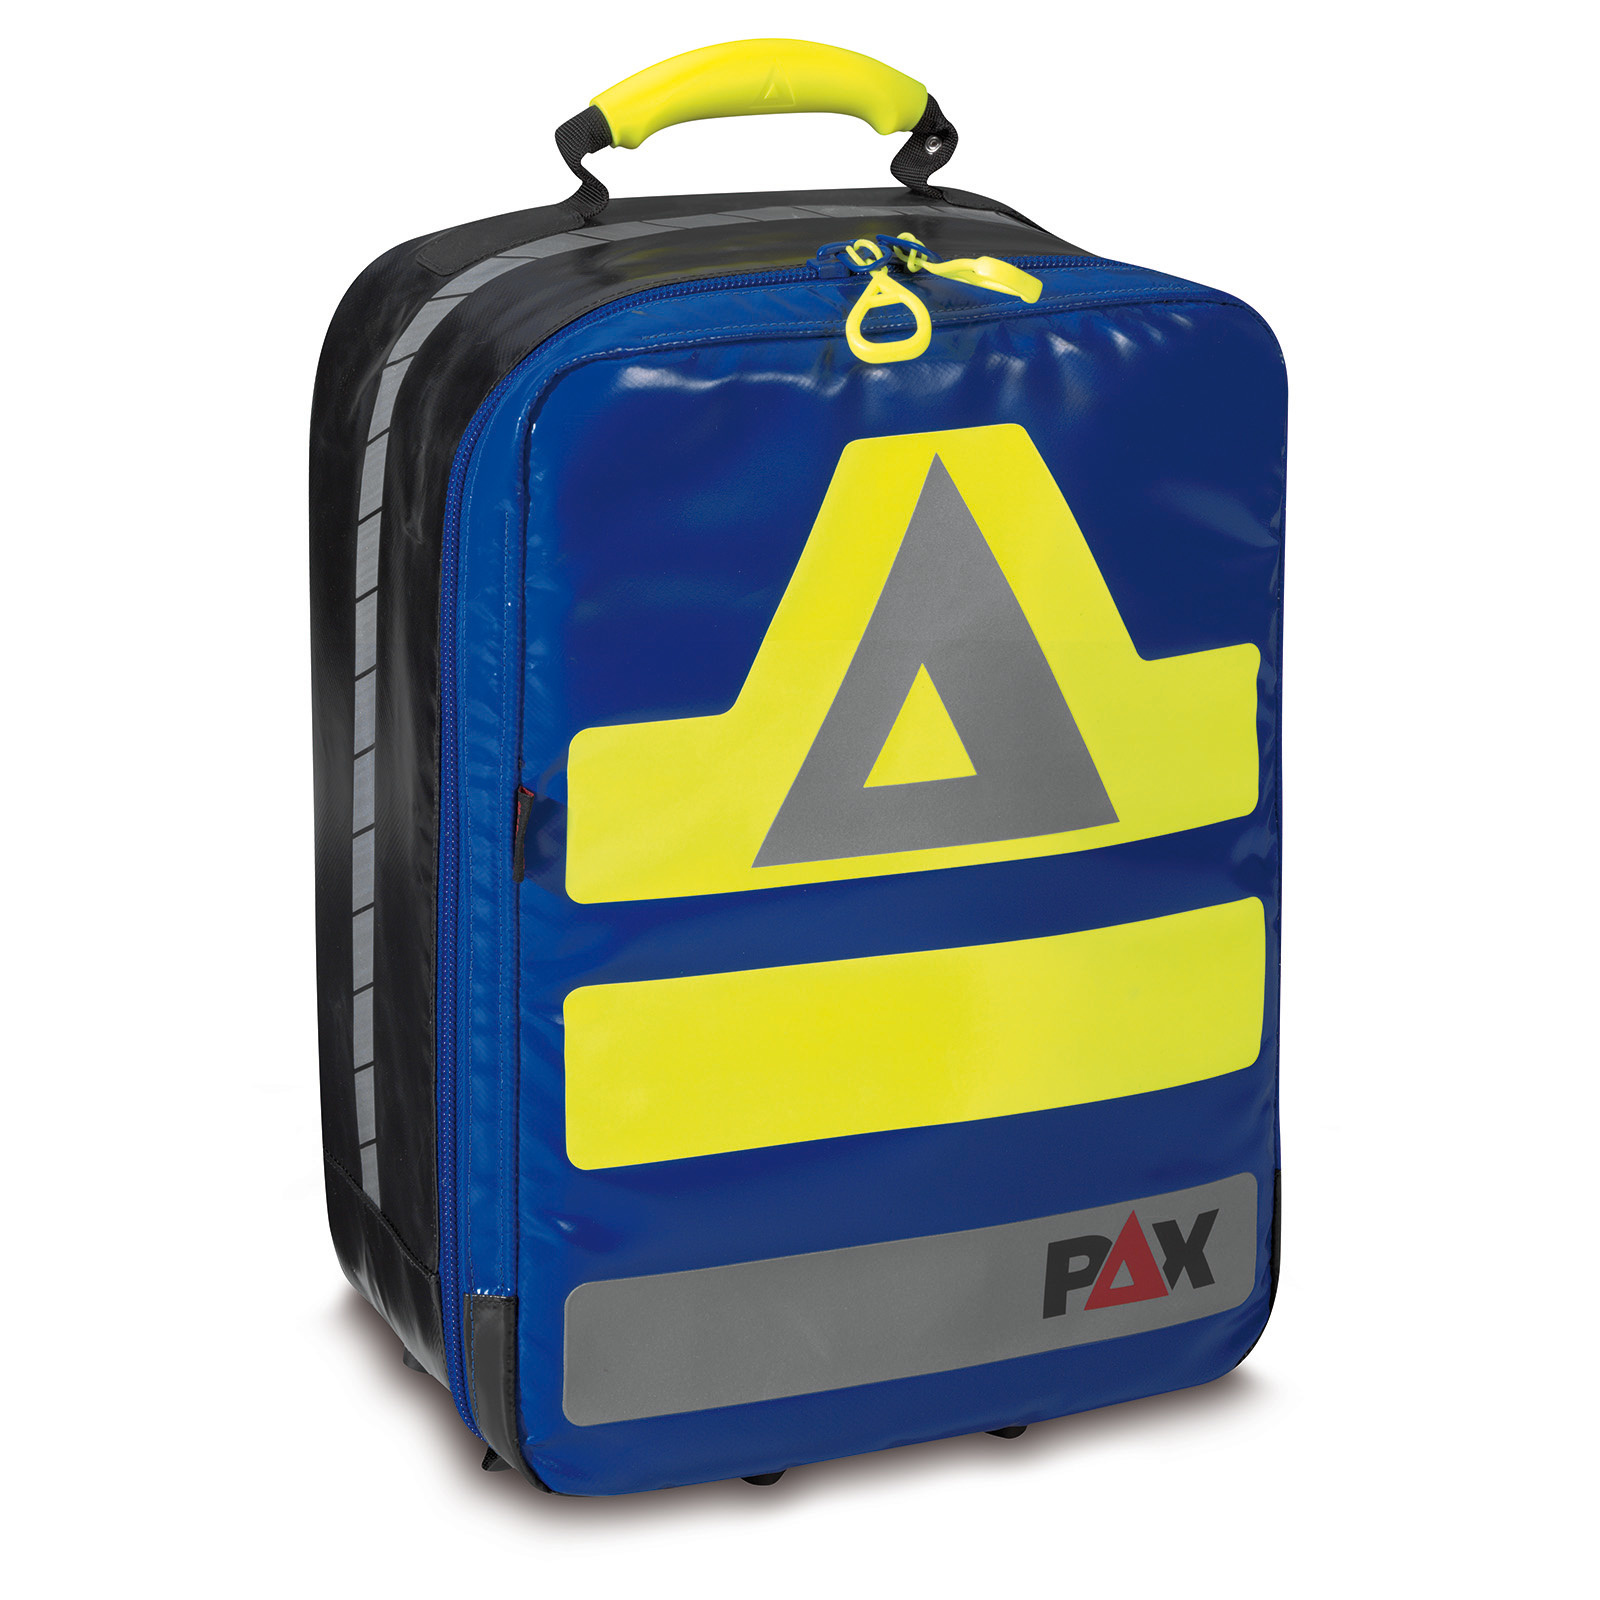 Rapid Backpack S PAX rugtas PAXwinkel.nl